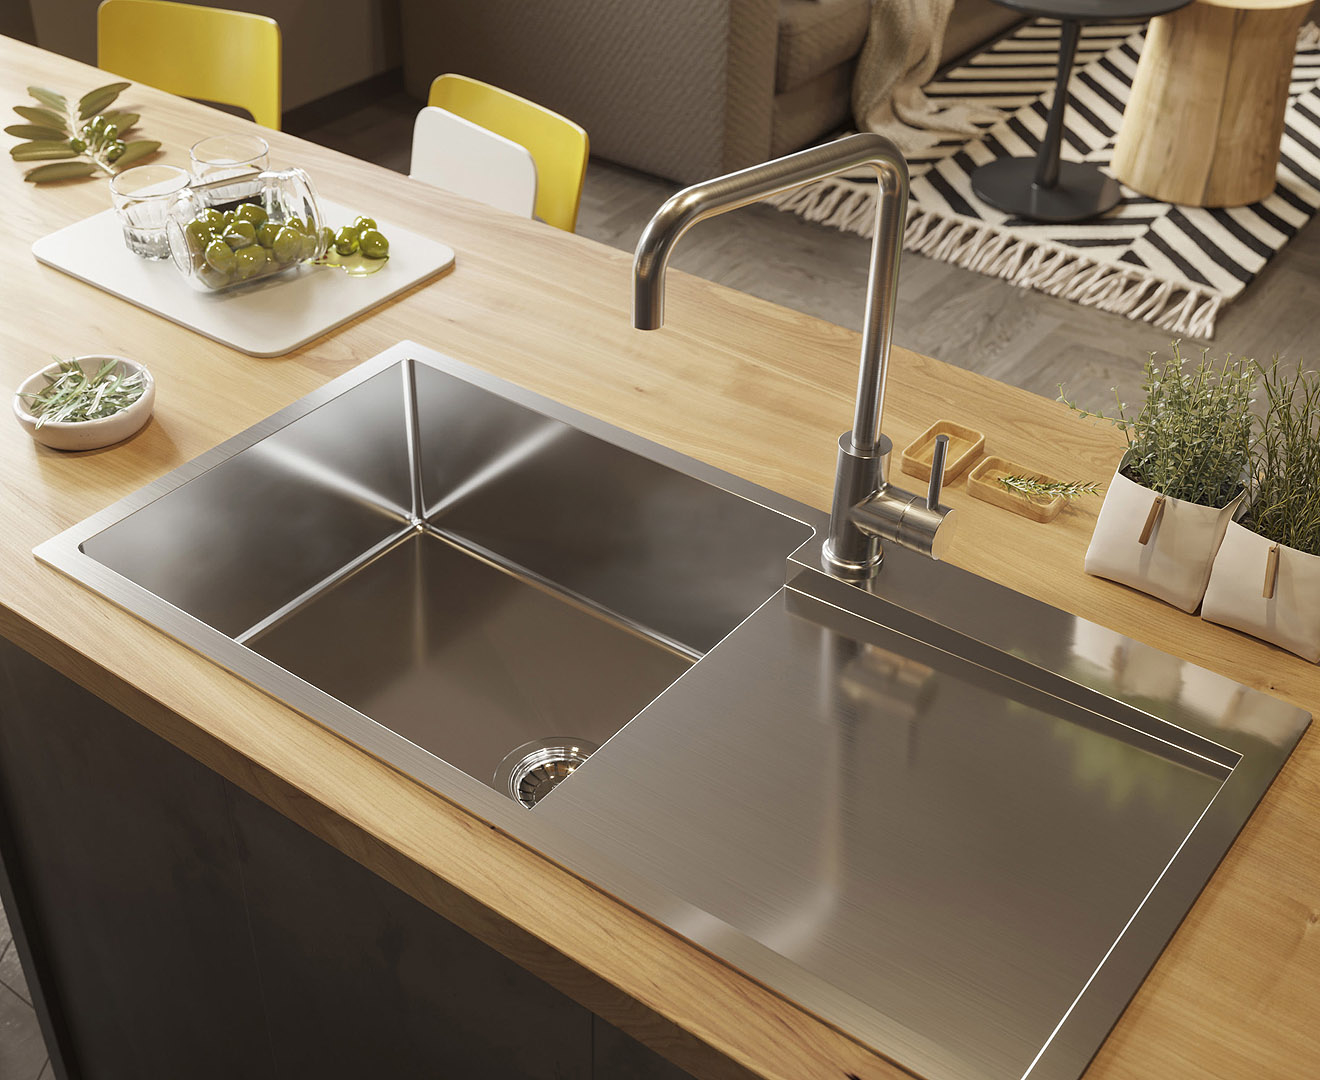 316 stainless kitchen sink